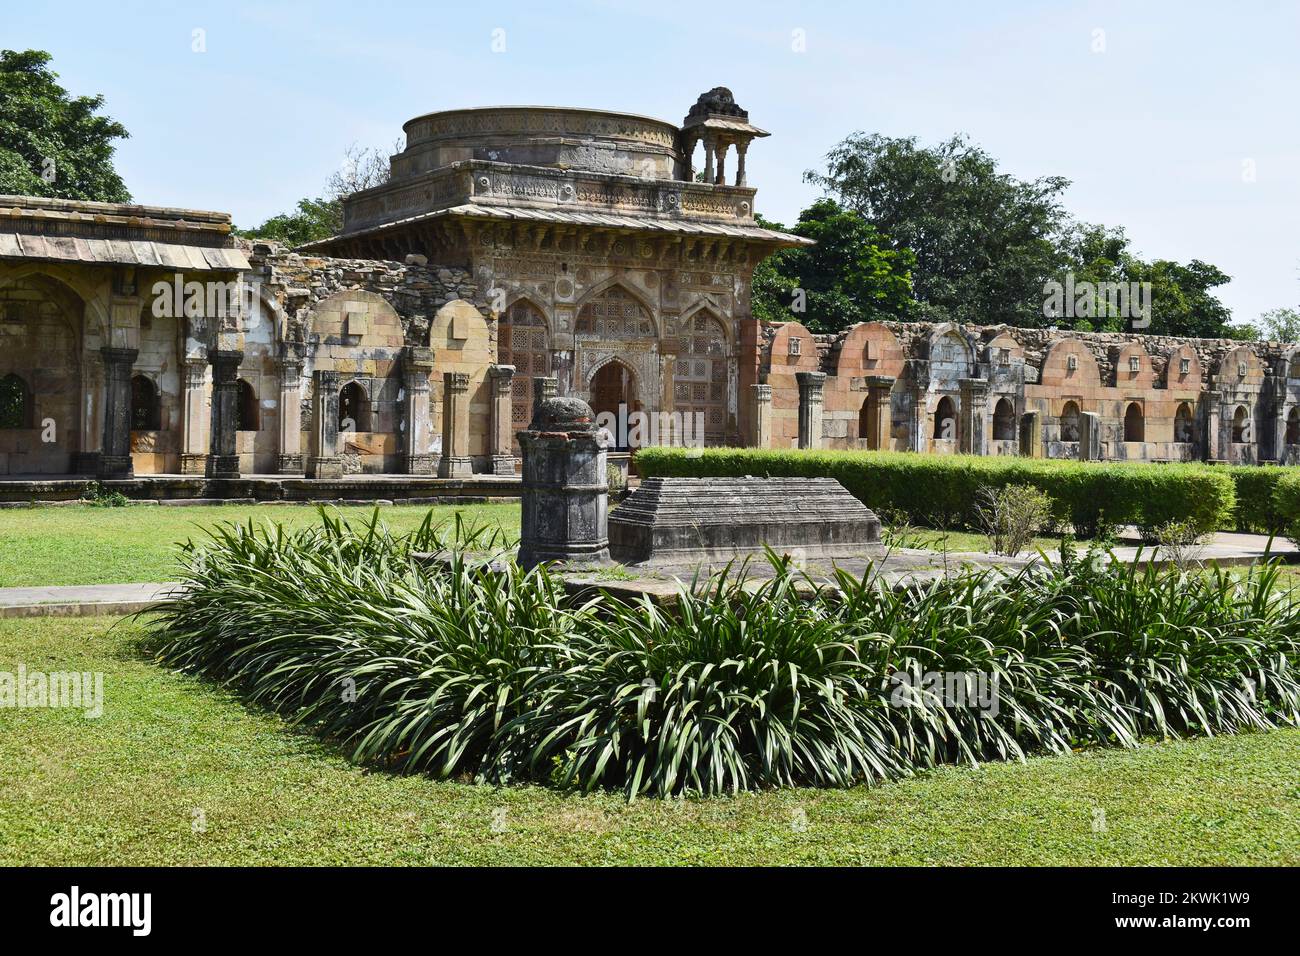 Jami Masjid, tomba Sufi e cortile con intricate sculture in pietra, un monumento islamico è stato costruito dal Sultano Mahmud Begada nel 1509, Champaner-Pava Foto Stock